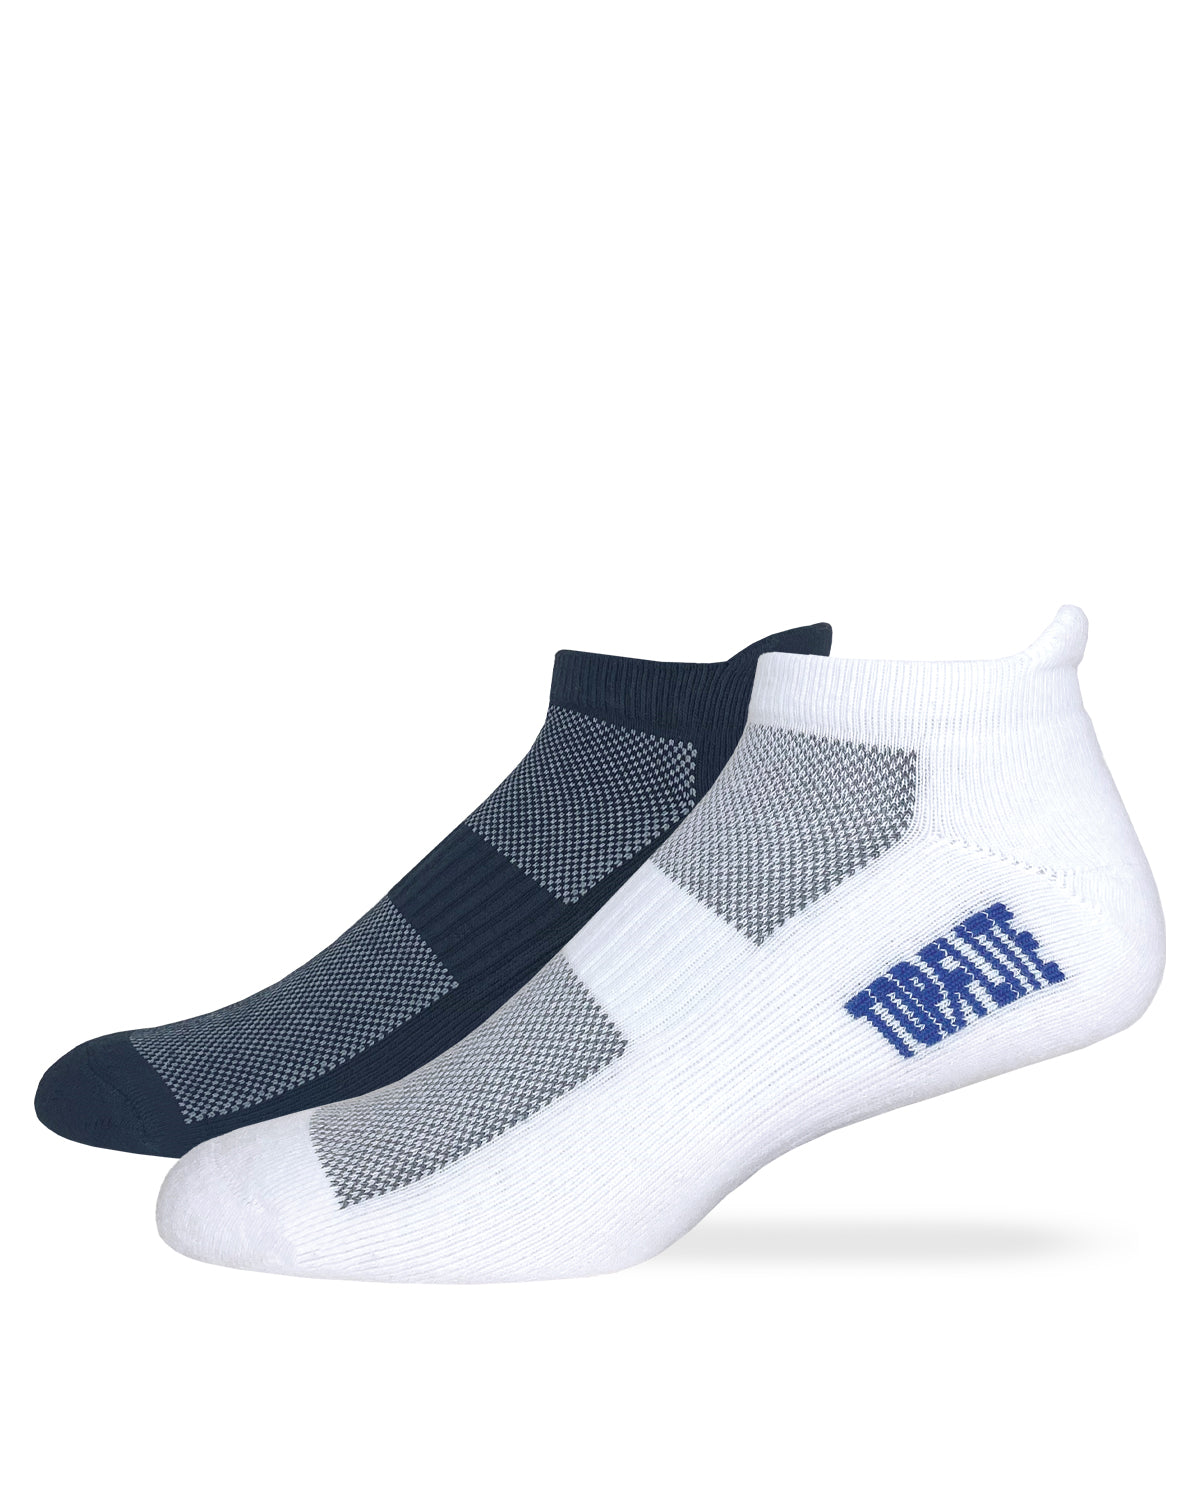 Top Flite Men's Heel Tab Low Cut Sport Socks 2 Pair Pack